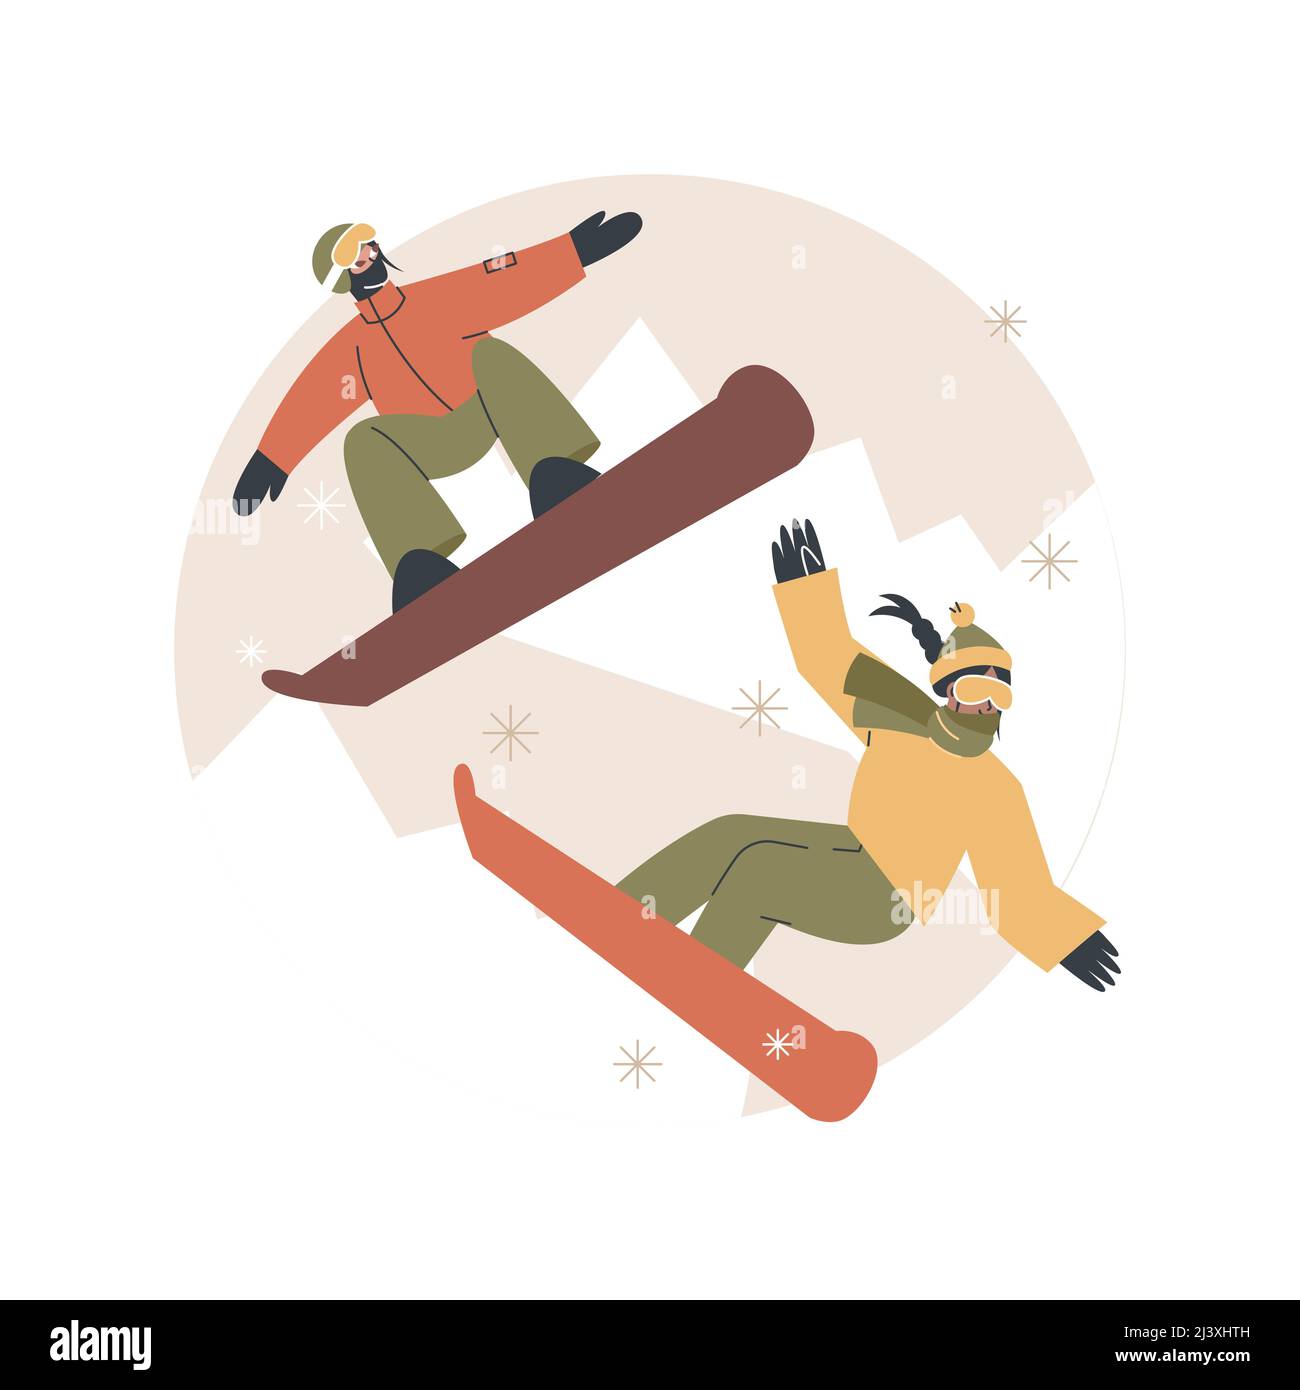 Winter Extremsport abstrakte Konzept Vektor Illustration. Extremer Wintersport, Ski- und Snowboardausrüstungsgeschäft, Bergresort, outd Stock Vektor